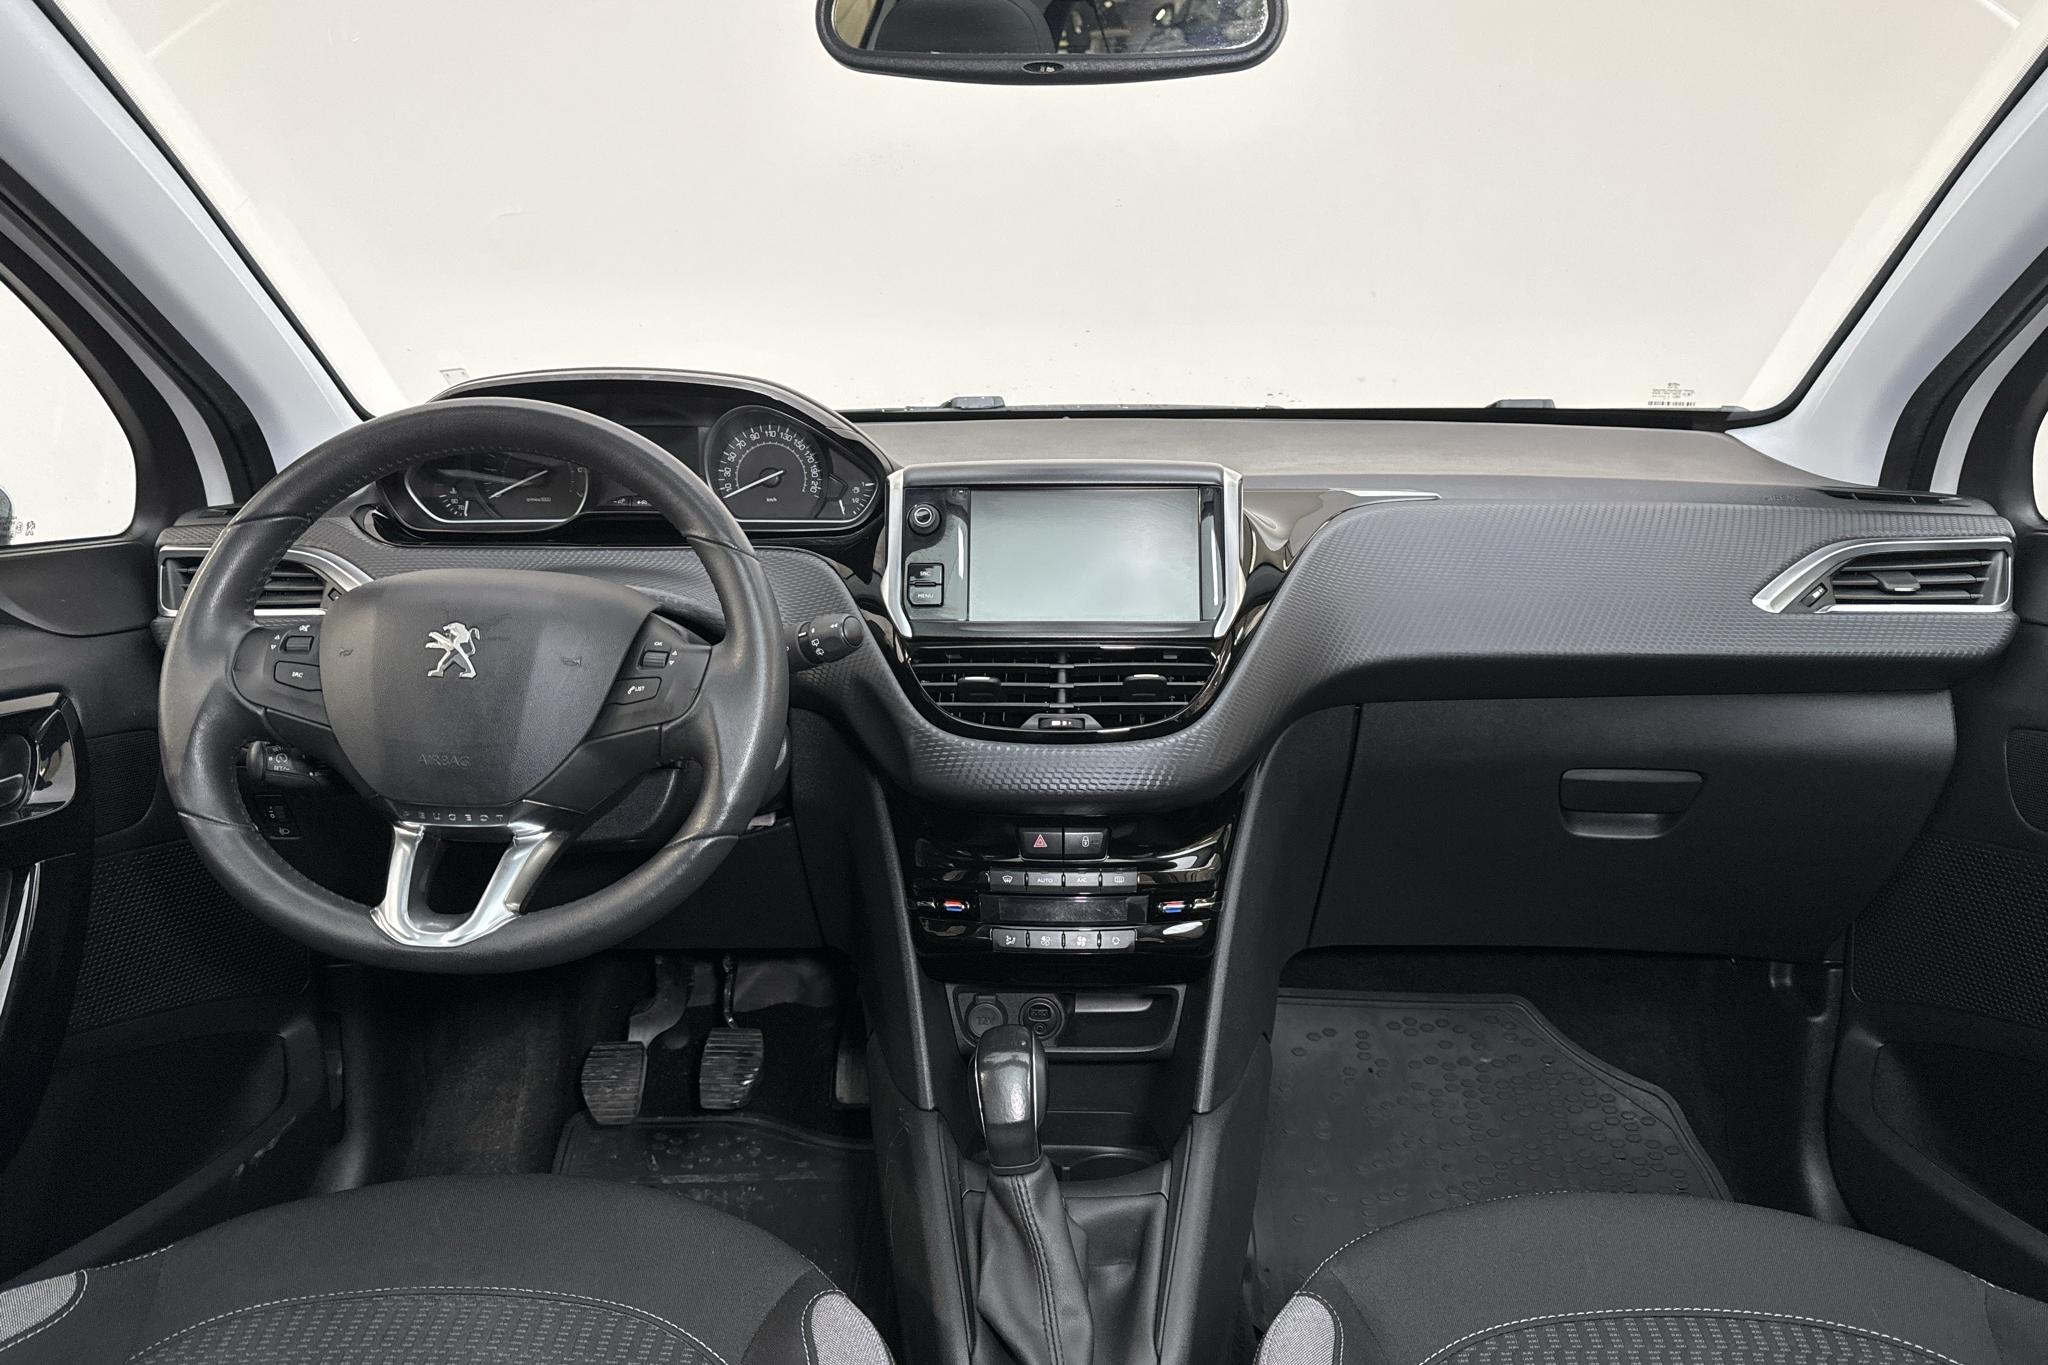 Peugeot 208 PureTech 5dr (82hk) - 8 162 mil - Manuell - 2016